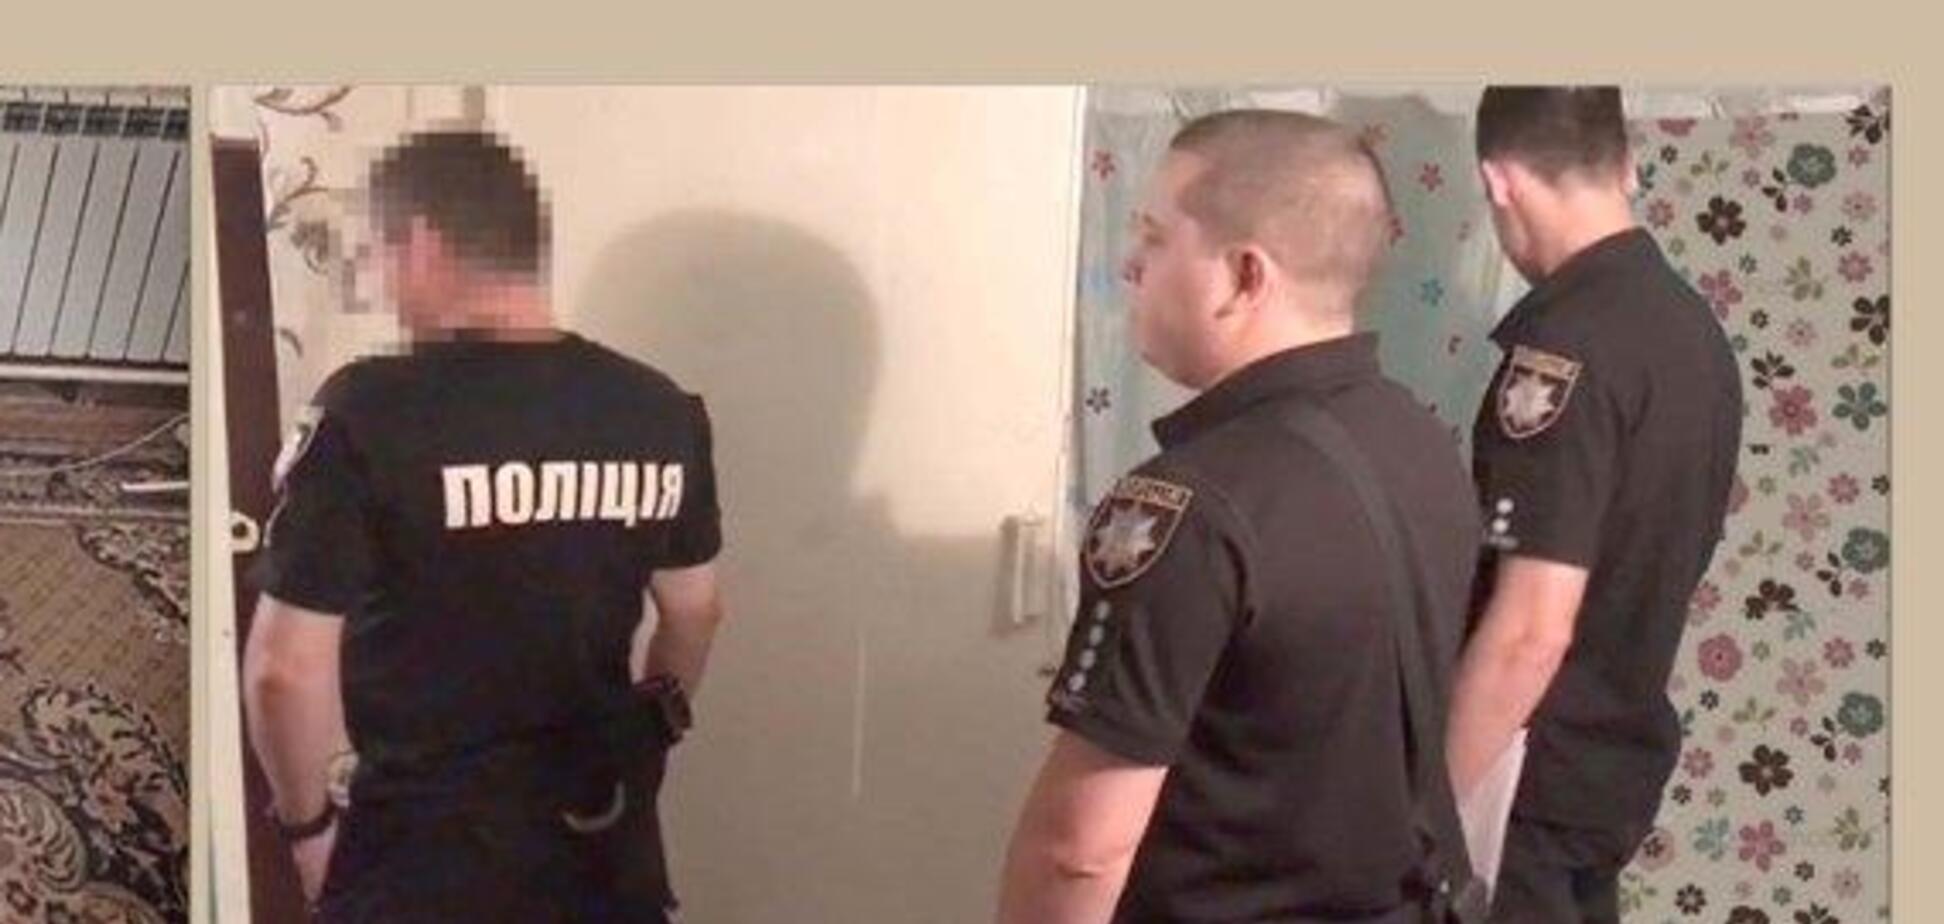 Вызвала мобильное такси: в Одессе зверски изнасиловали девушку